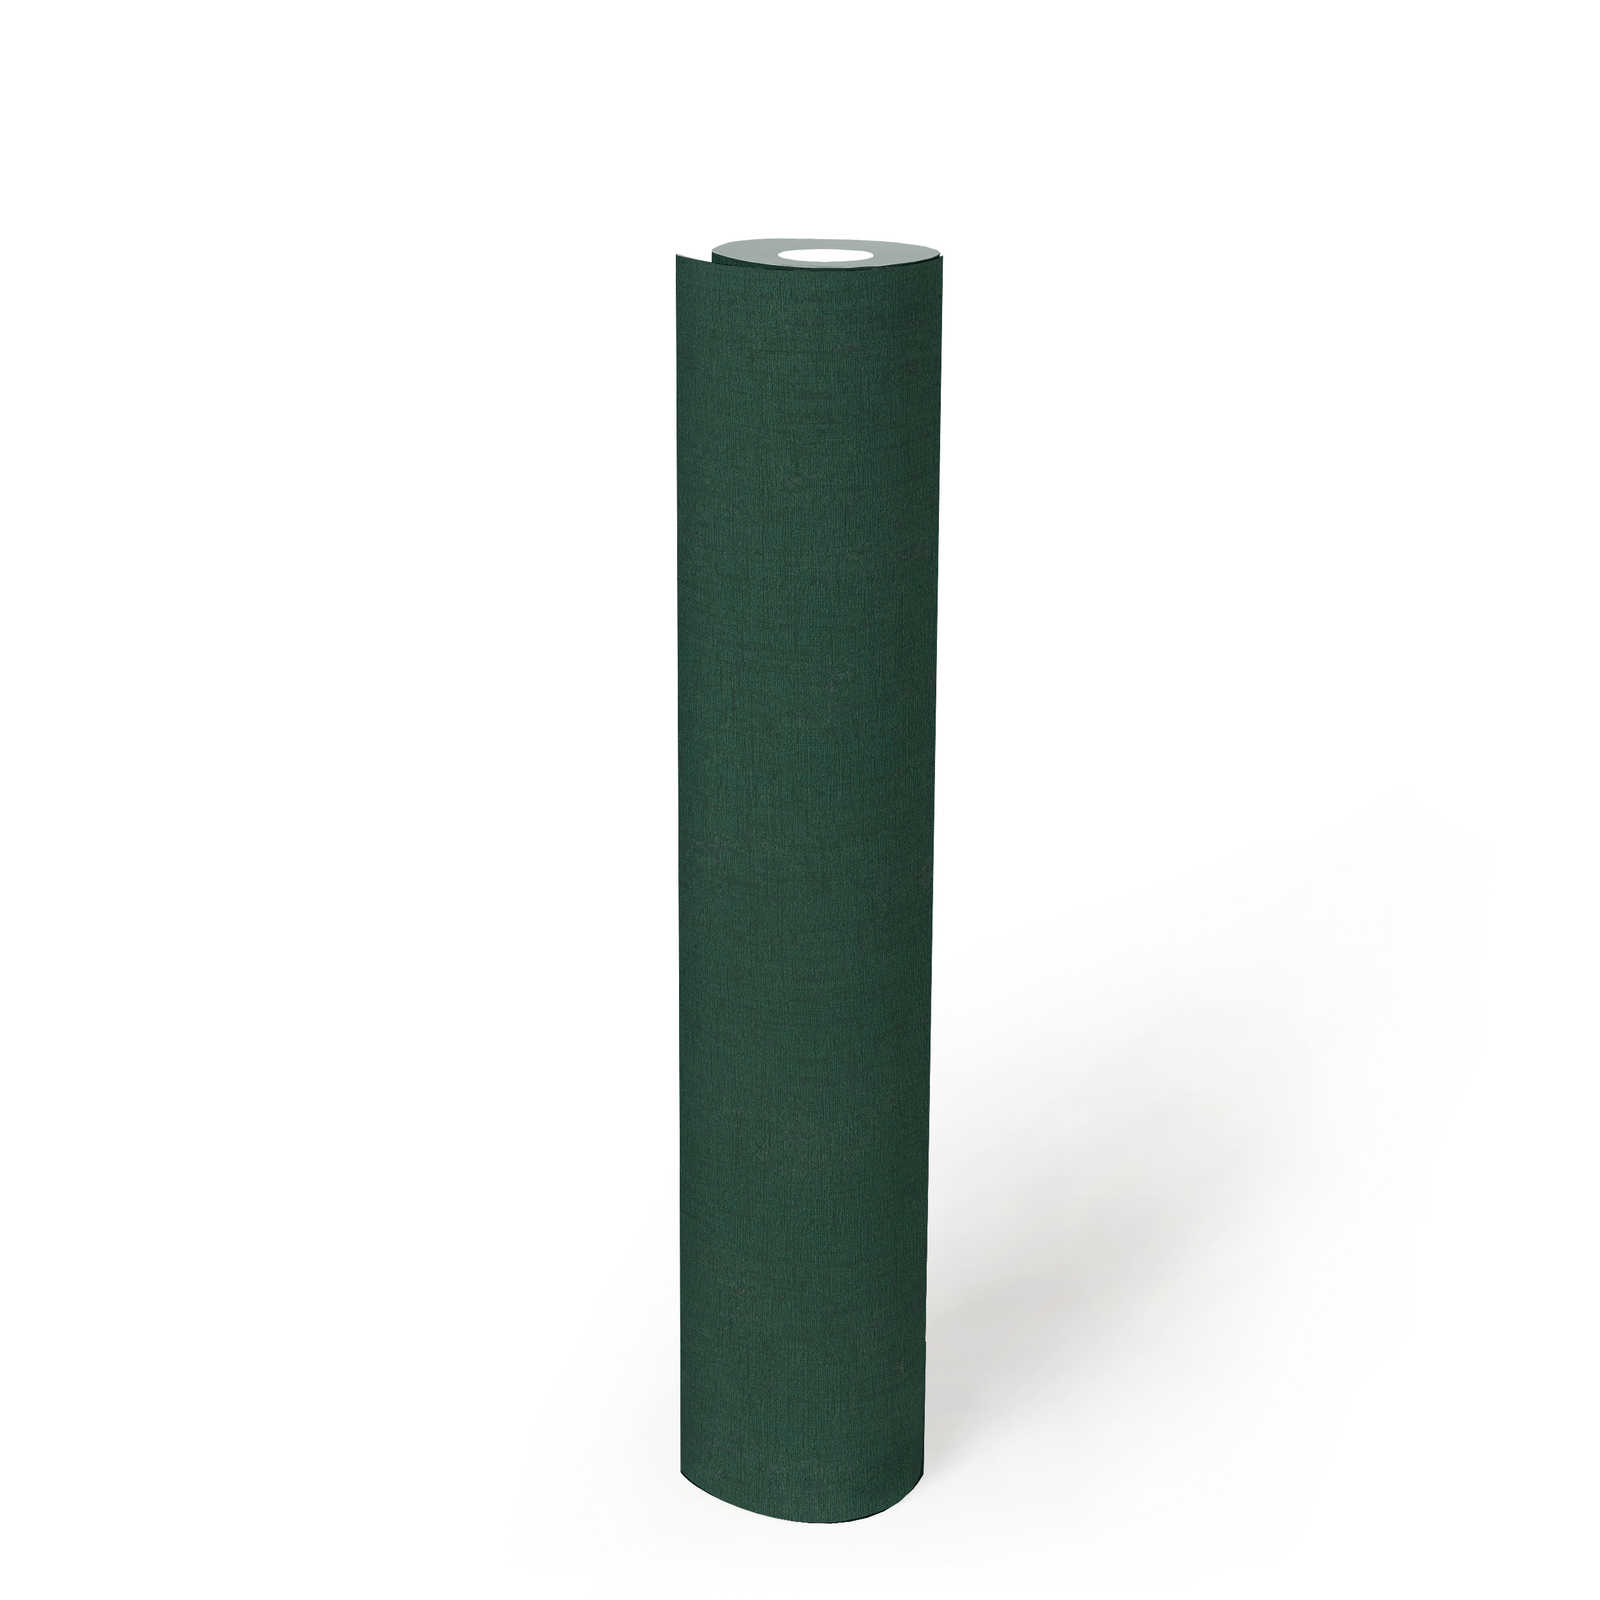             papier peint en papier intissé uni à texture légère - vert, vert foncé
        